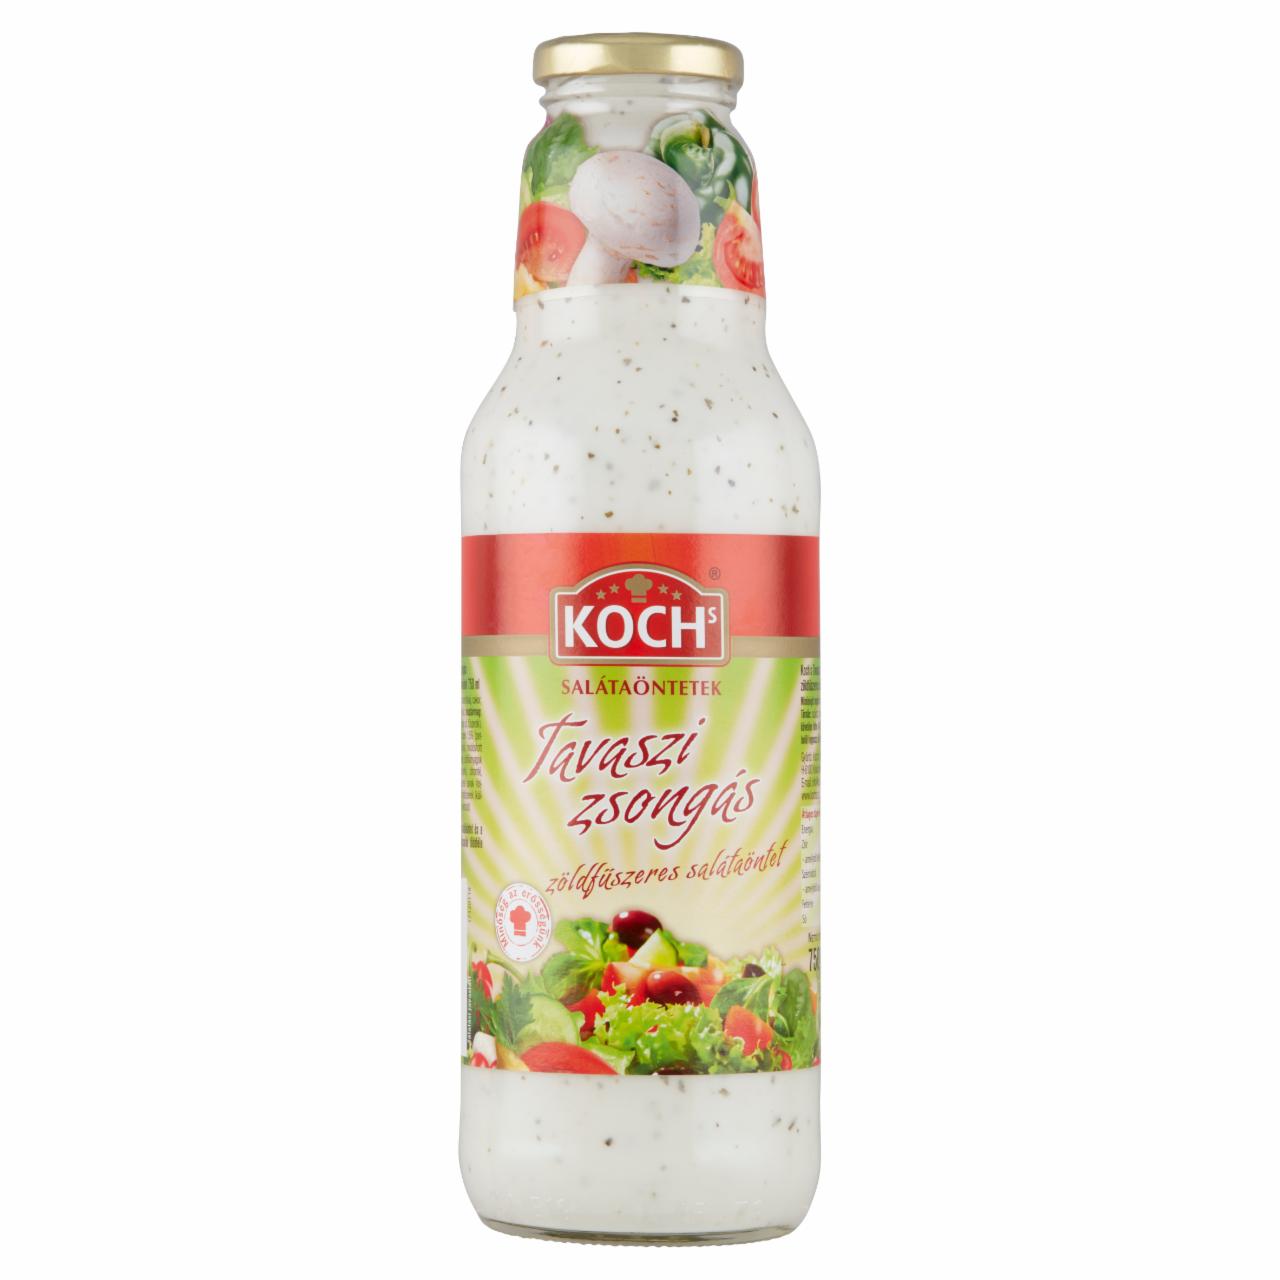 Képek - Koch's Tavaszi Zsongás zöldfűszeres salátaöntet 750 ml